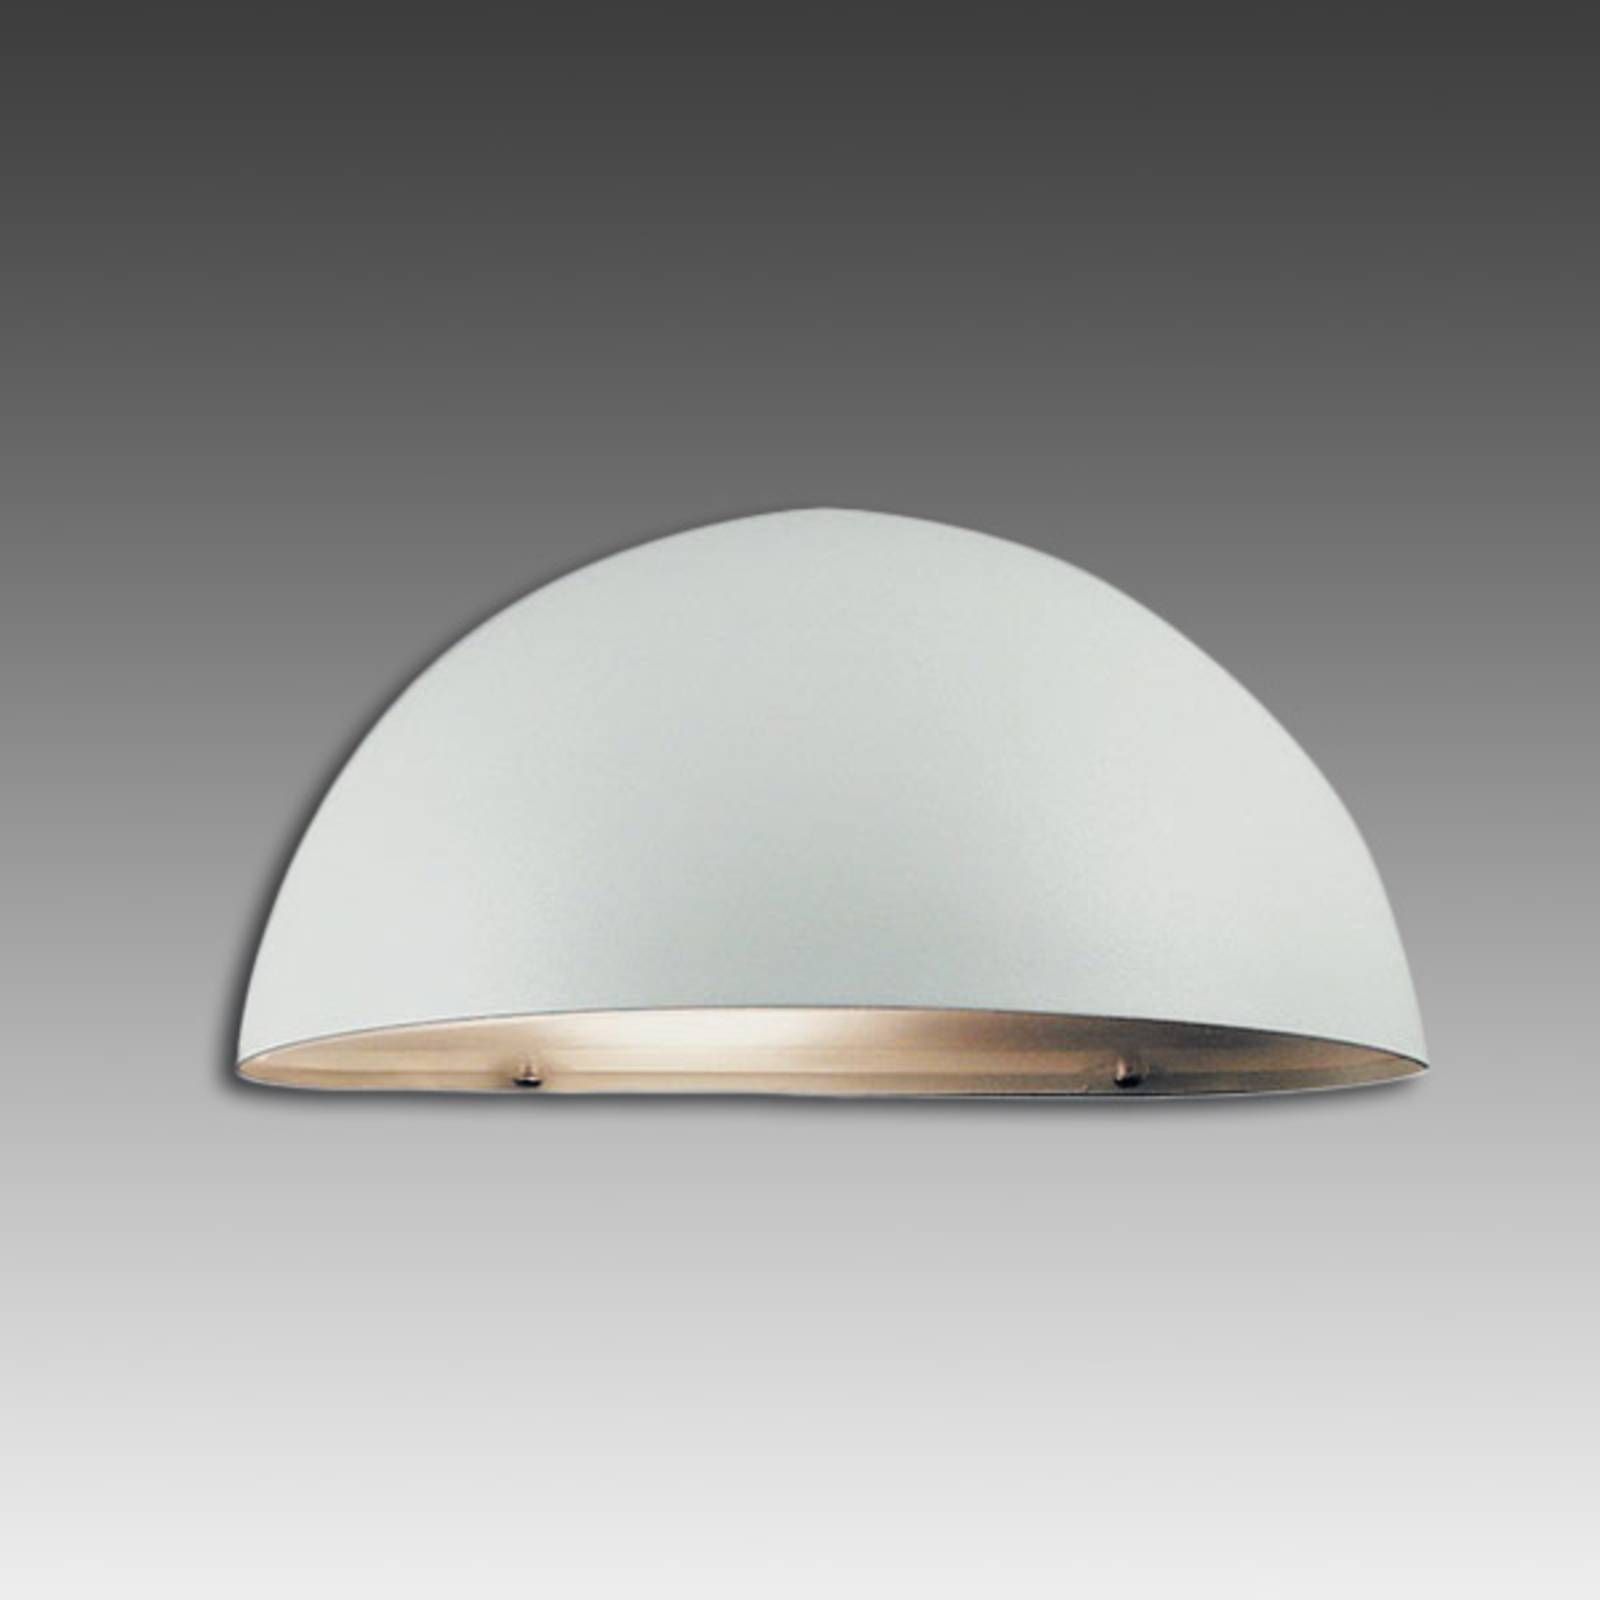 Nordlux Vonkajšie nástenné svietidlo Bergen, biele, kov, E27, 60W, L: 27 cm, K: 14cm